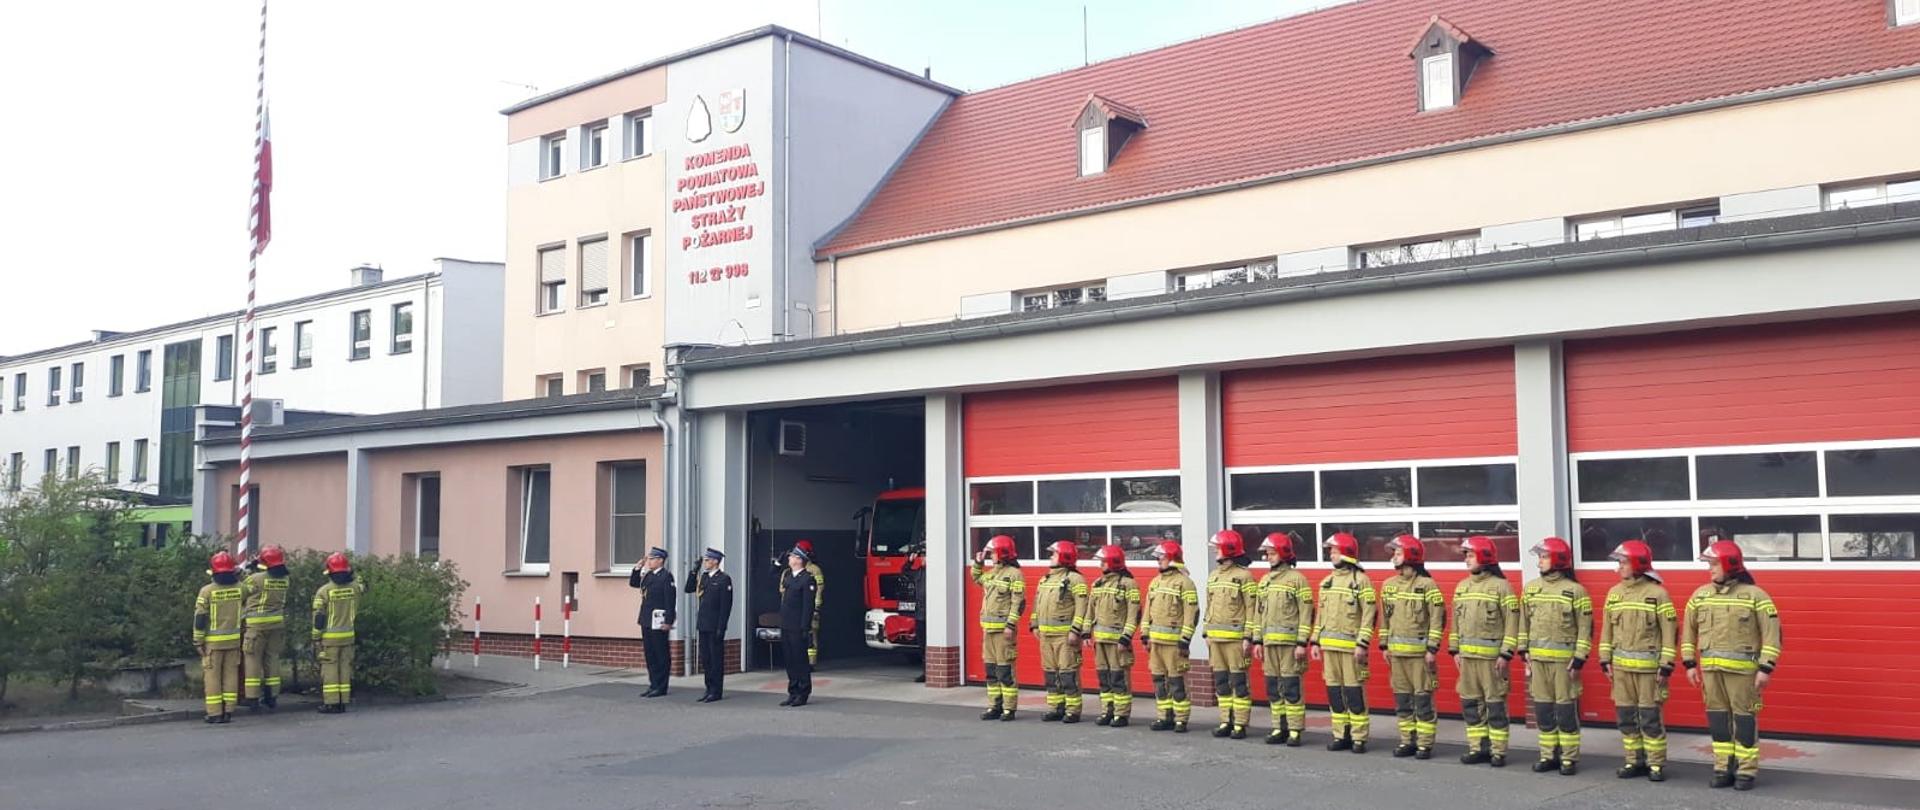 STRAŻACY ŚWIĘTUJĄ DZIEŃ FLAGI RZECZYPOSPOLITEJ POLSKIEJ. Na zdjęciu widać strażaków podczas uroczystego apelu z okazji Dnia Flagi, strażacy stoją w rzędzie, za nimi budynek strażnicy, flaga Polski uroczyście wciągana na maszt.